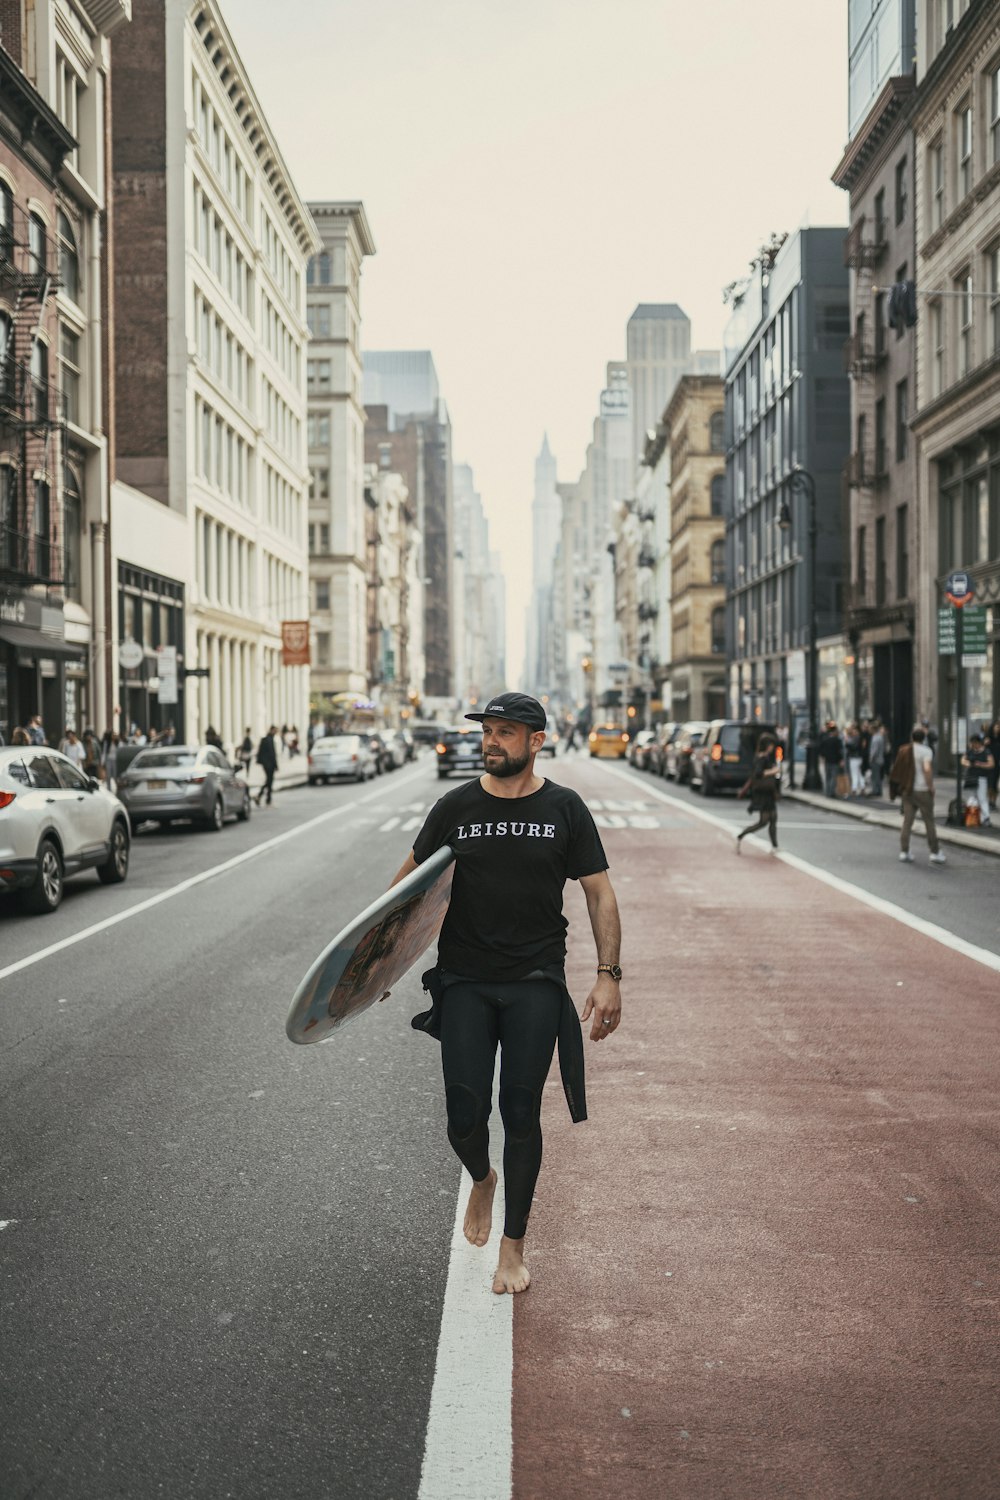 Un homme marchant dans une rue tenant une planche de surf